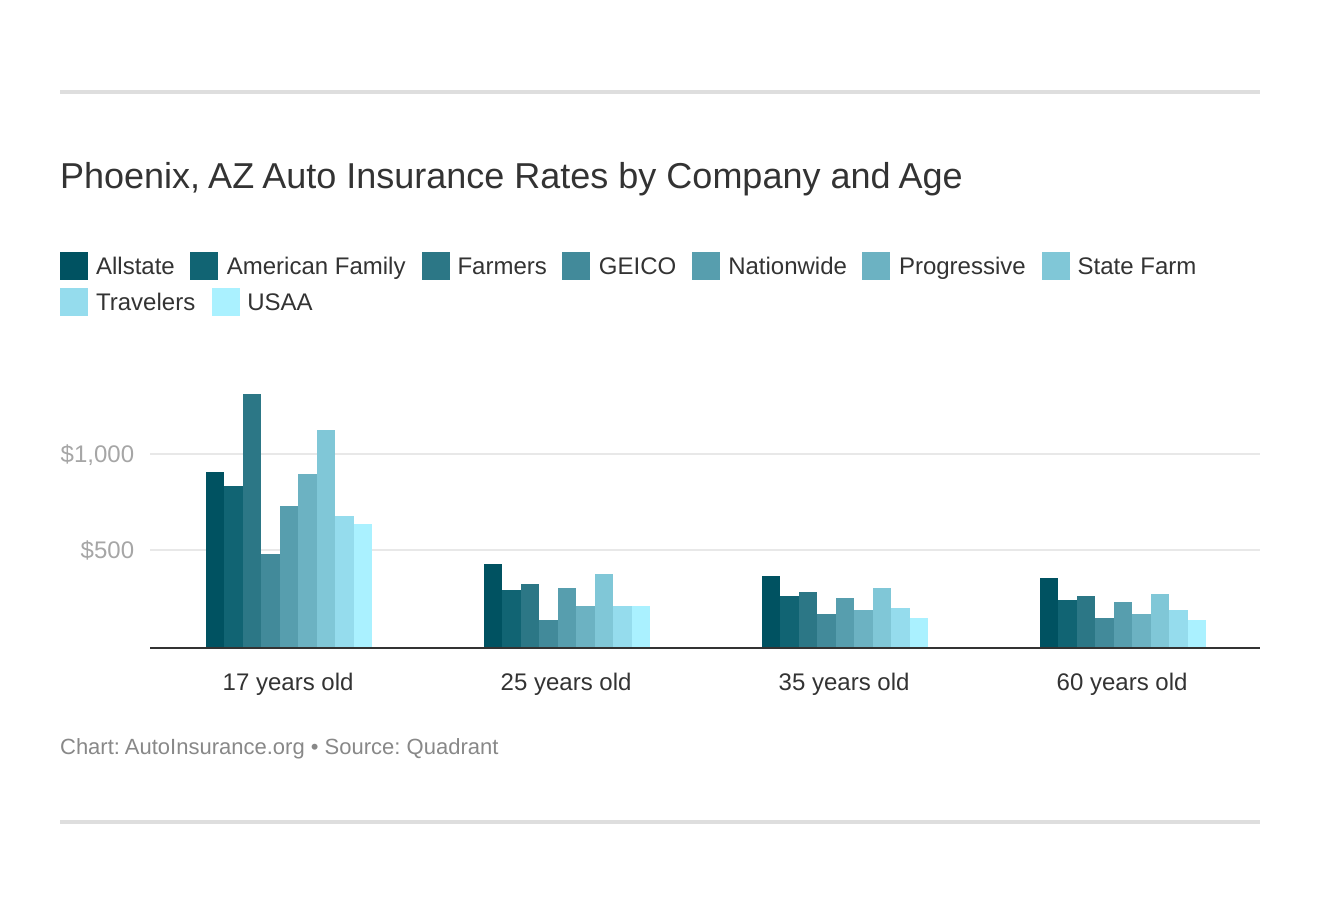 Phoenix, AZ Auto Insurance Rates by Company and Age